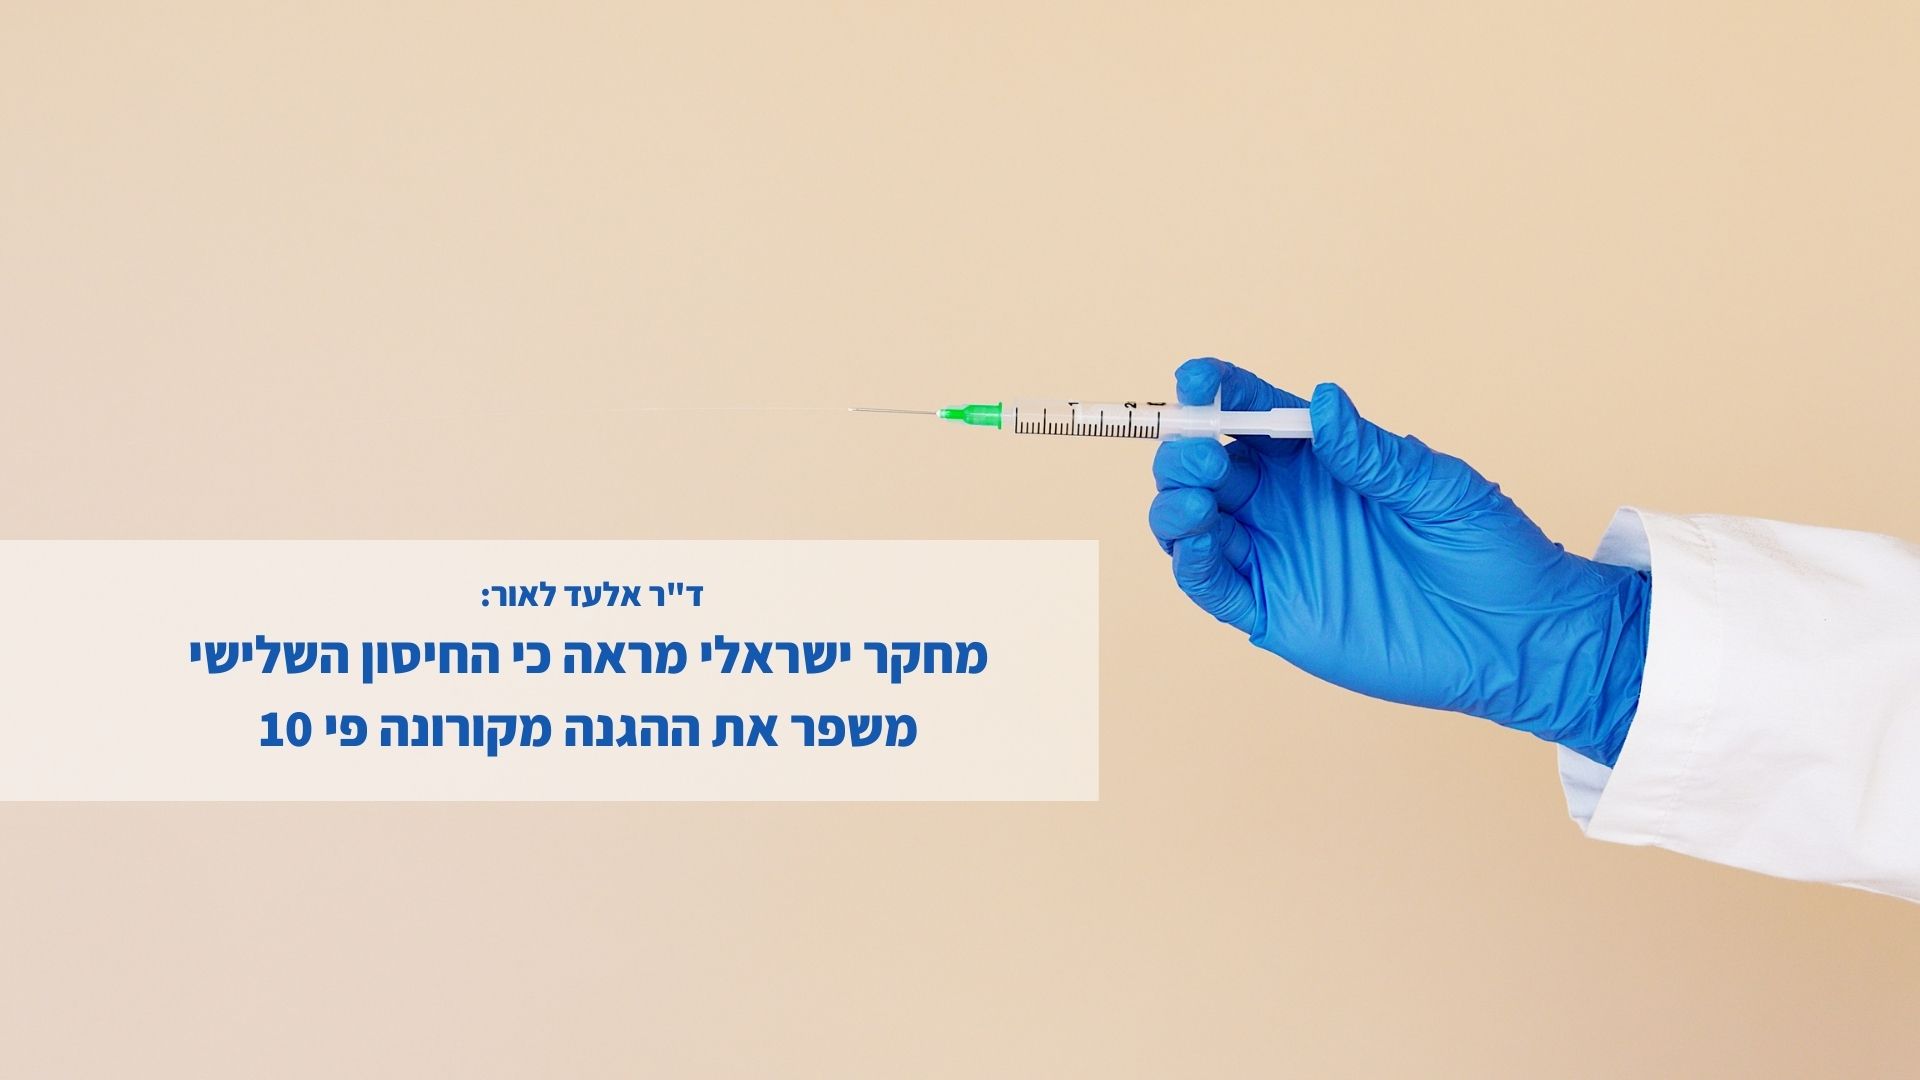 אלעד לאור: מחקר ישראלי מראה כי החיסון השלישי משפר את ההגנה מקורונה פי 10